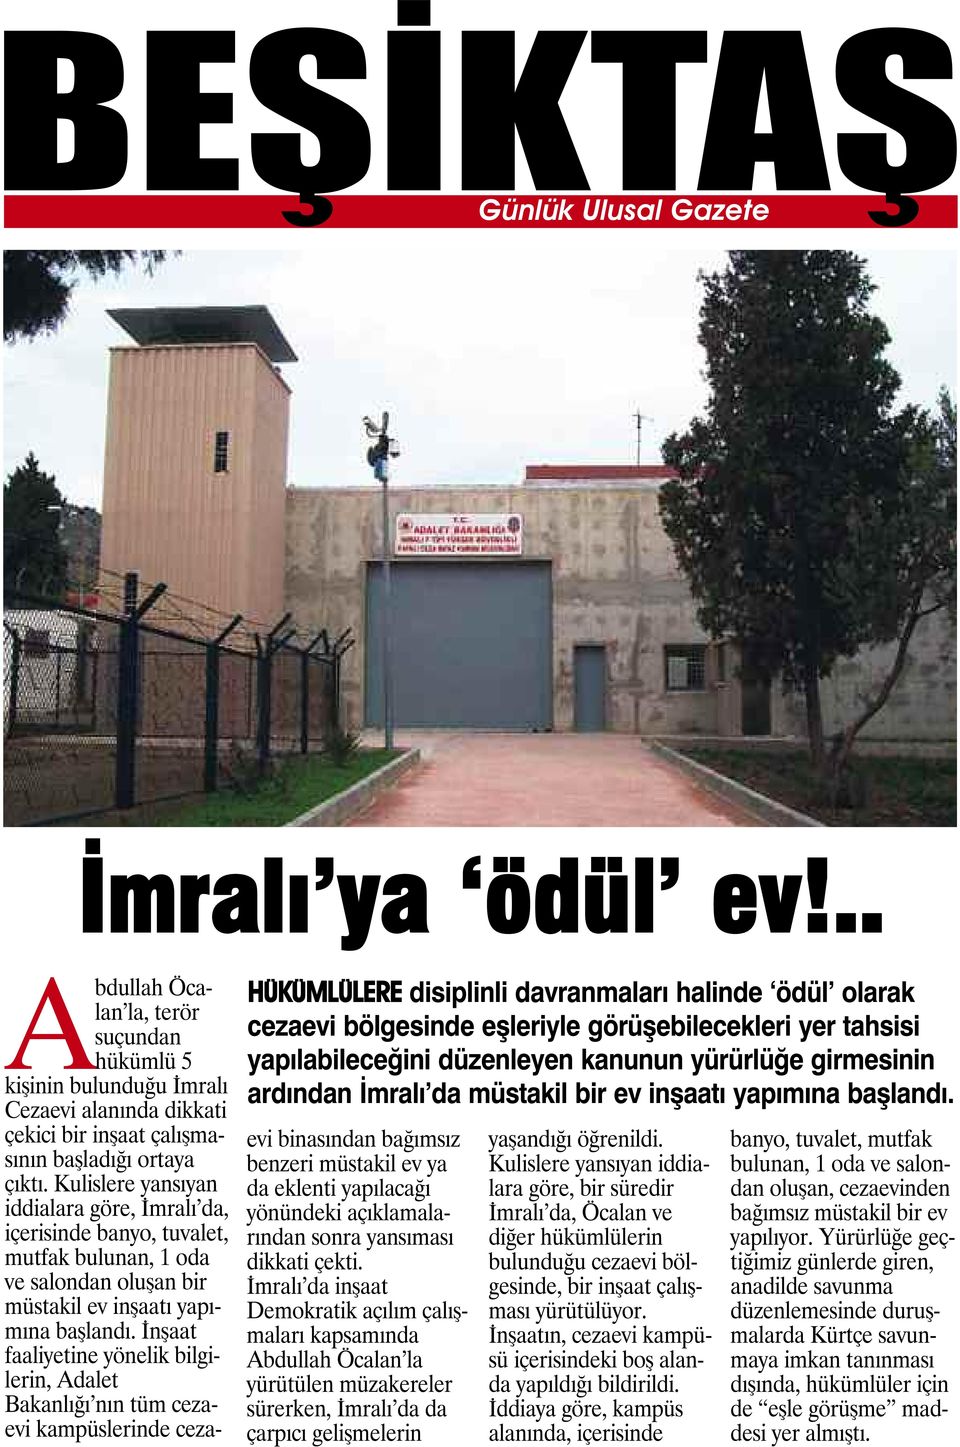 müstakil bir ev inşaatı yapımına başlandı. Abdullah Öcalan la, terör suçundan hükümlü 5 kişinin bulunduğu İmralı Cezaevi alanında dikkati çekici bir inşaat çalışmasının başladığı ortaya çıktı.